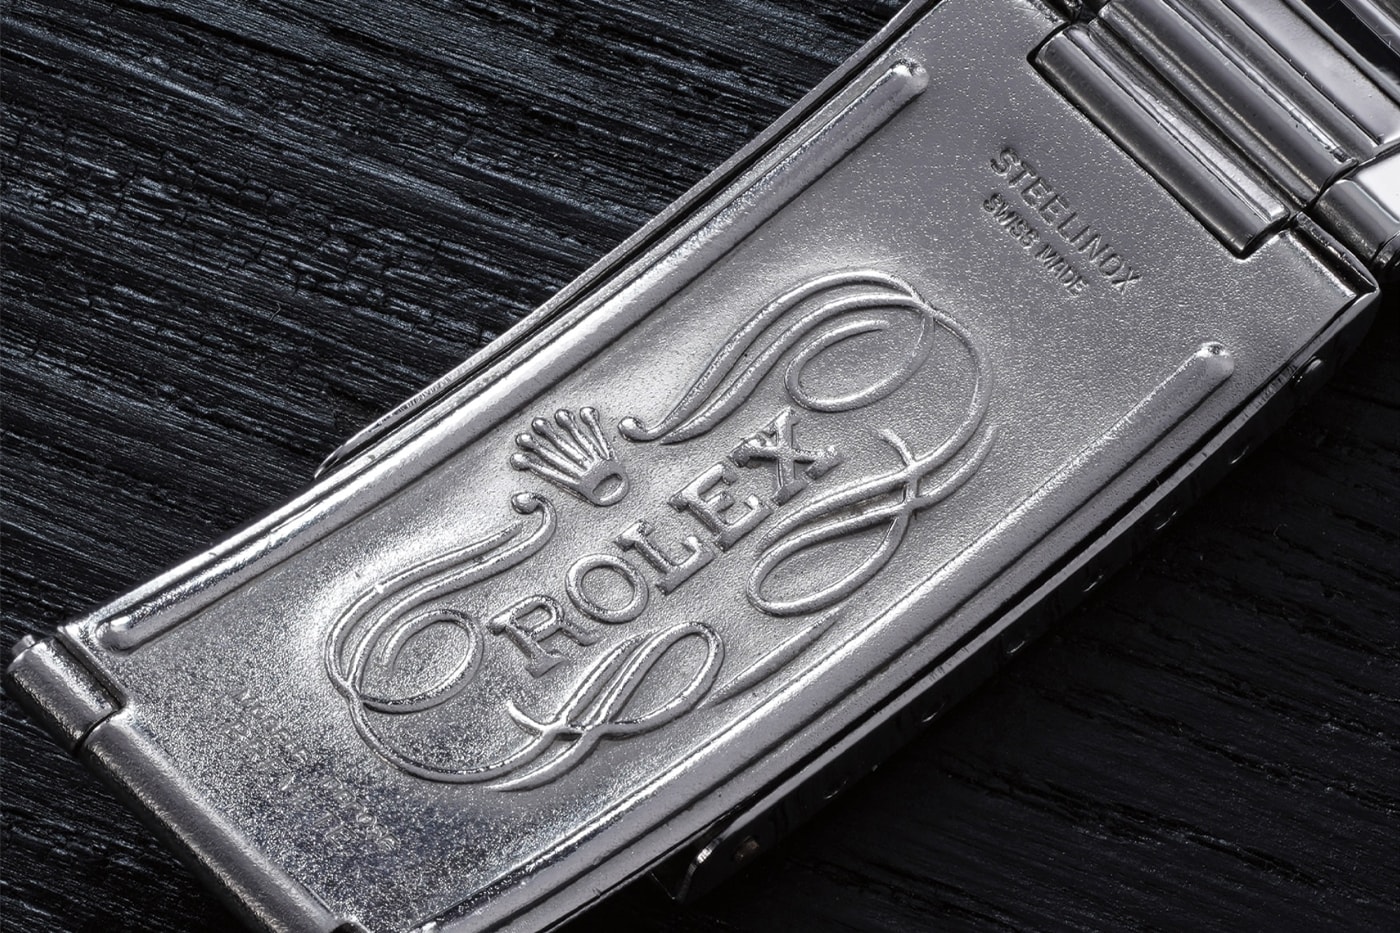 可承受超高電磁 1958 Rolex Milgauss 定製錶款以 $250 萬美元拍賣